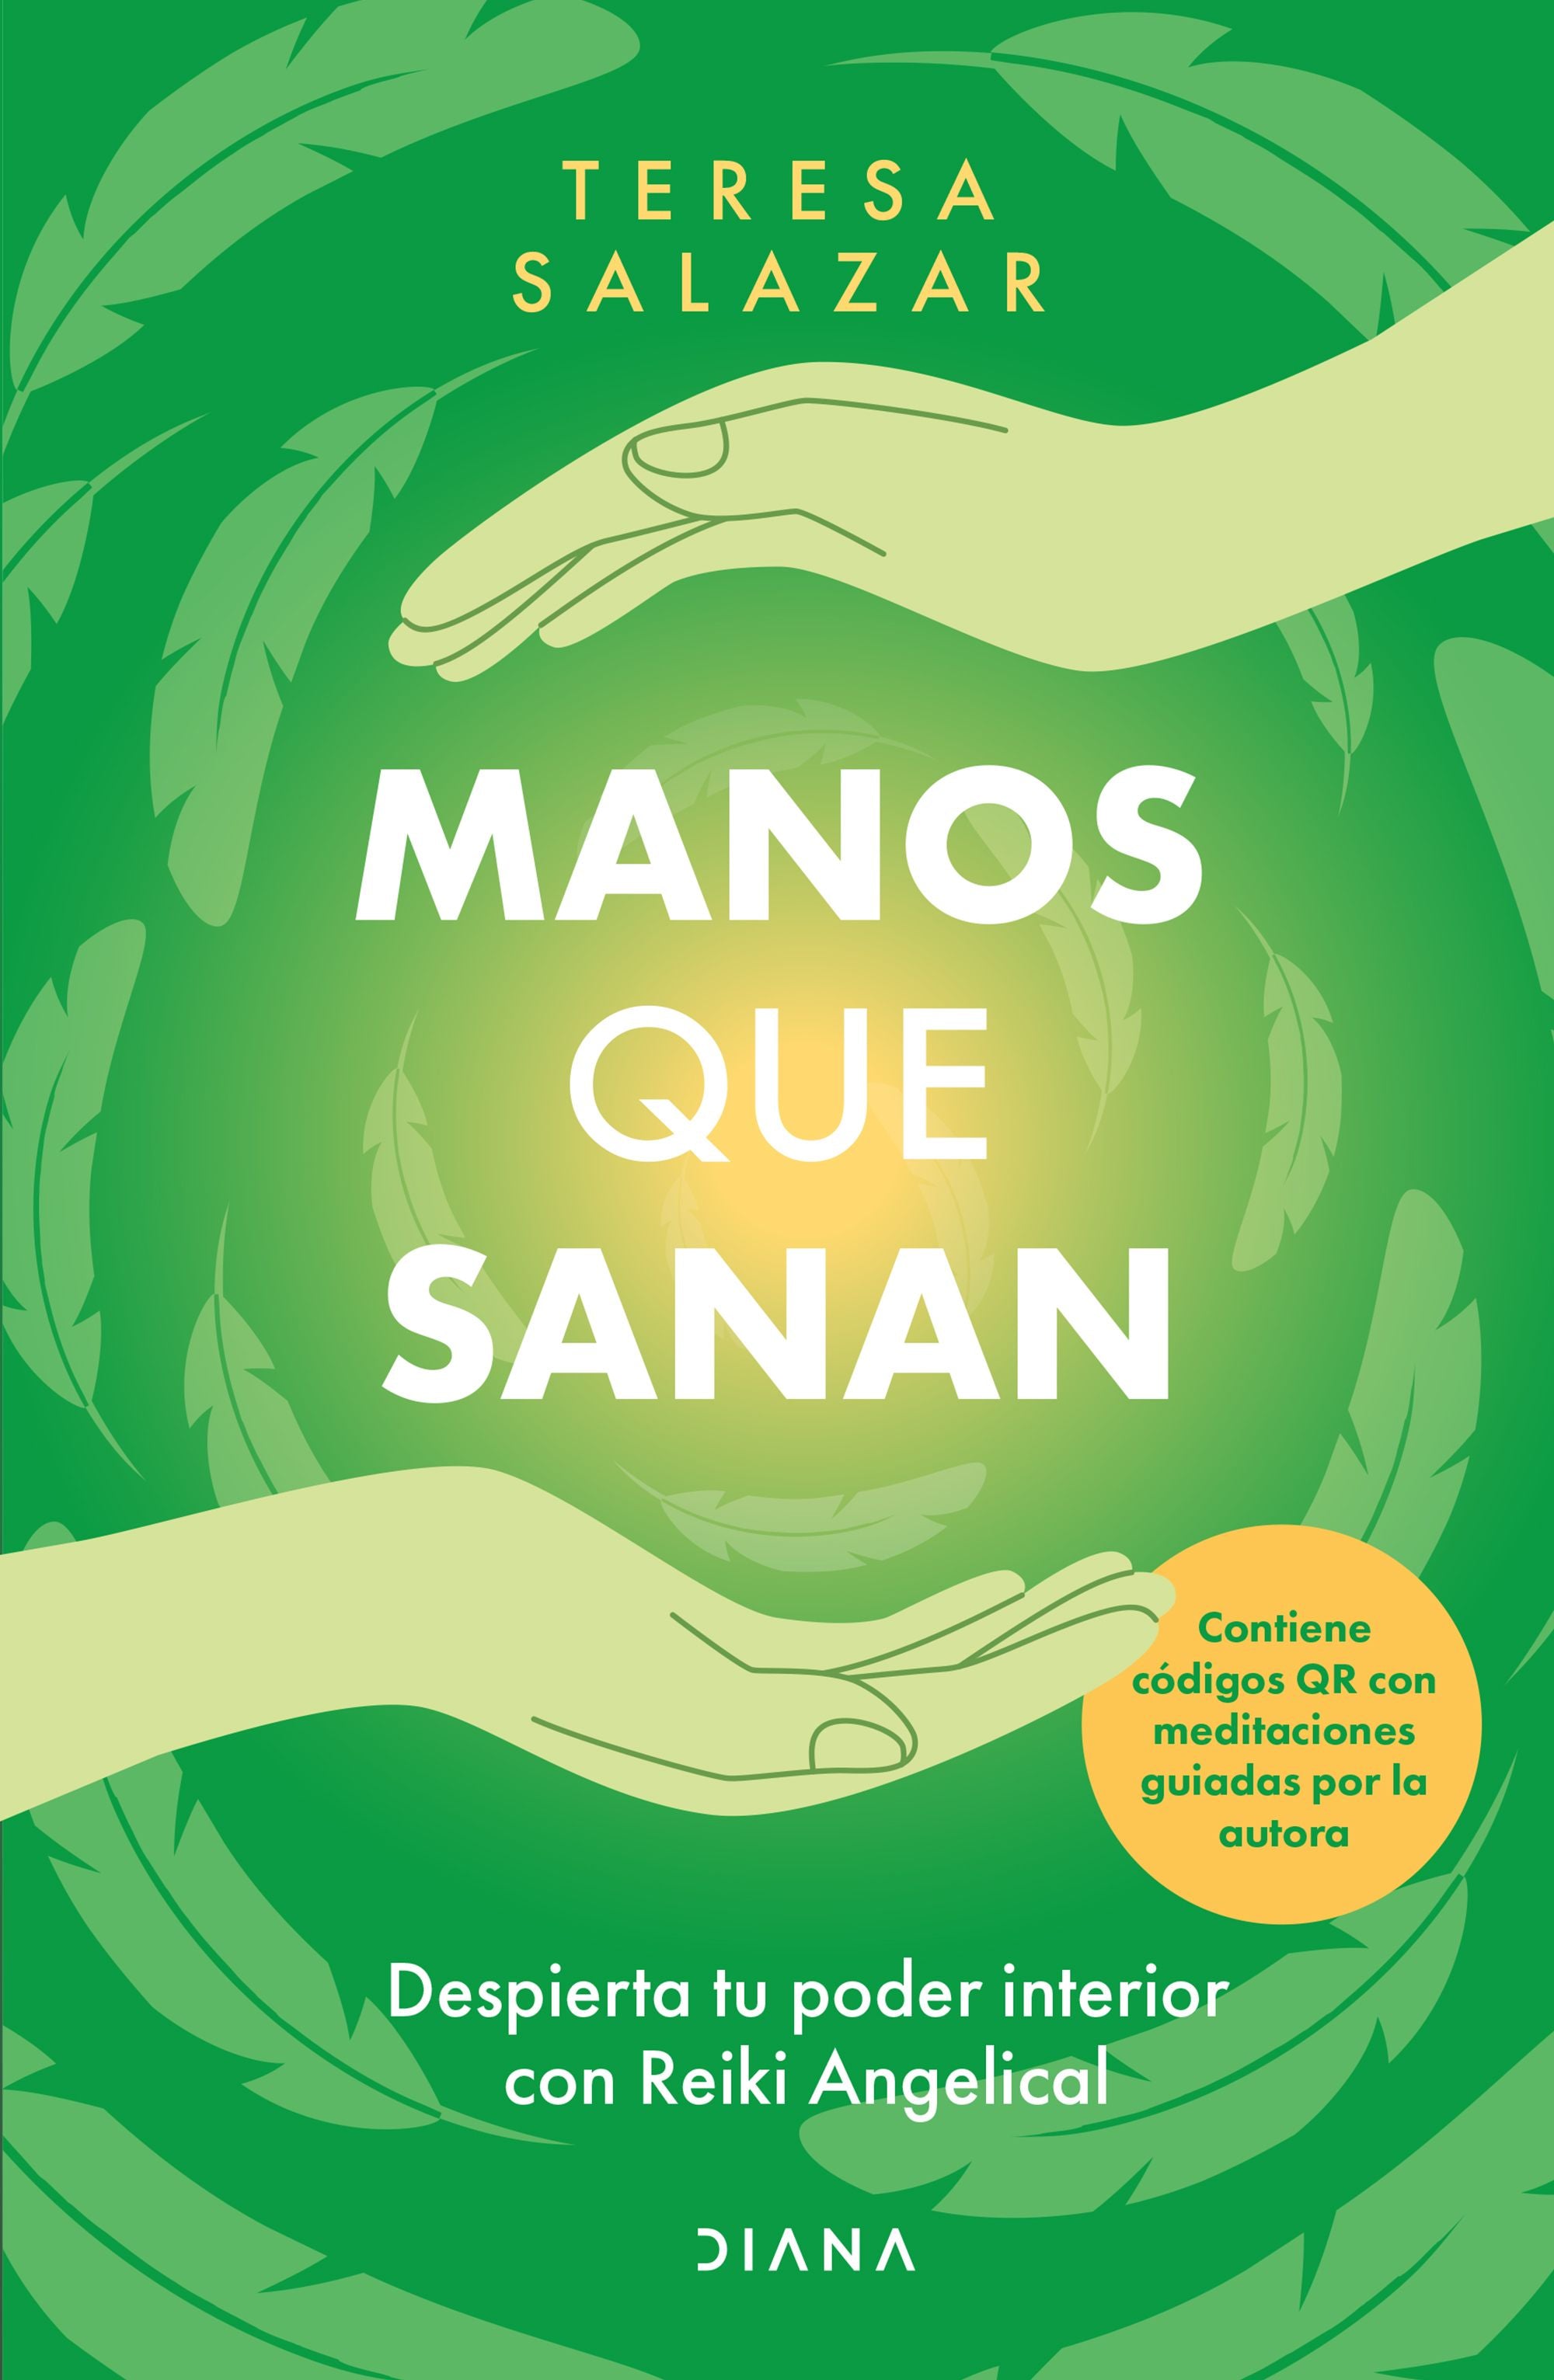 Libro Teresa Salazar Posada - Manos Que Sanan